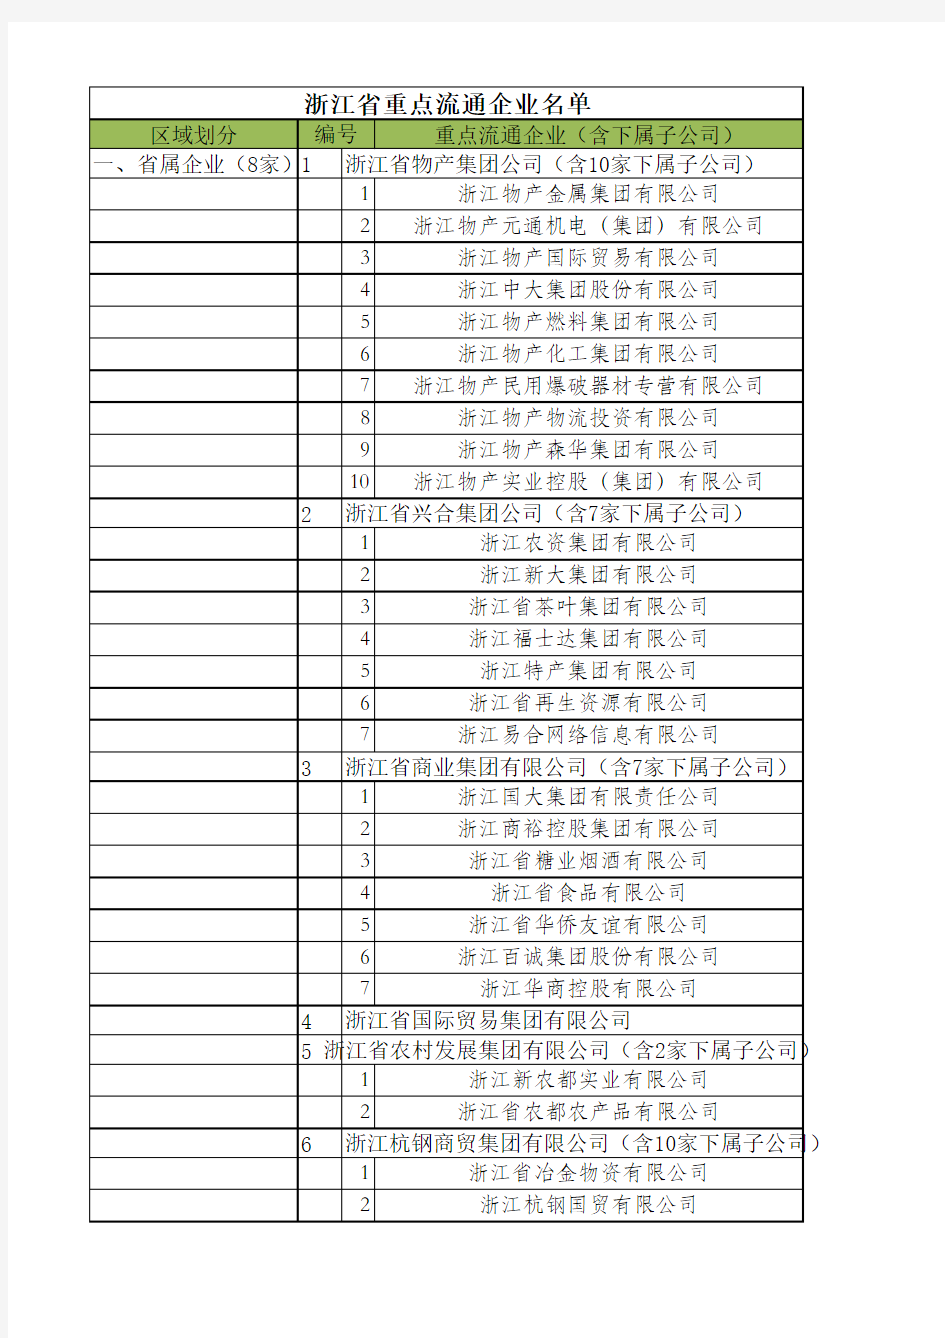 【20140610】浙江省重点流通企业名单